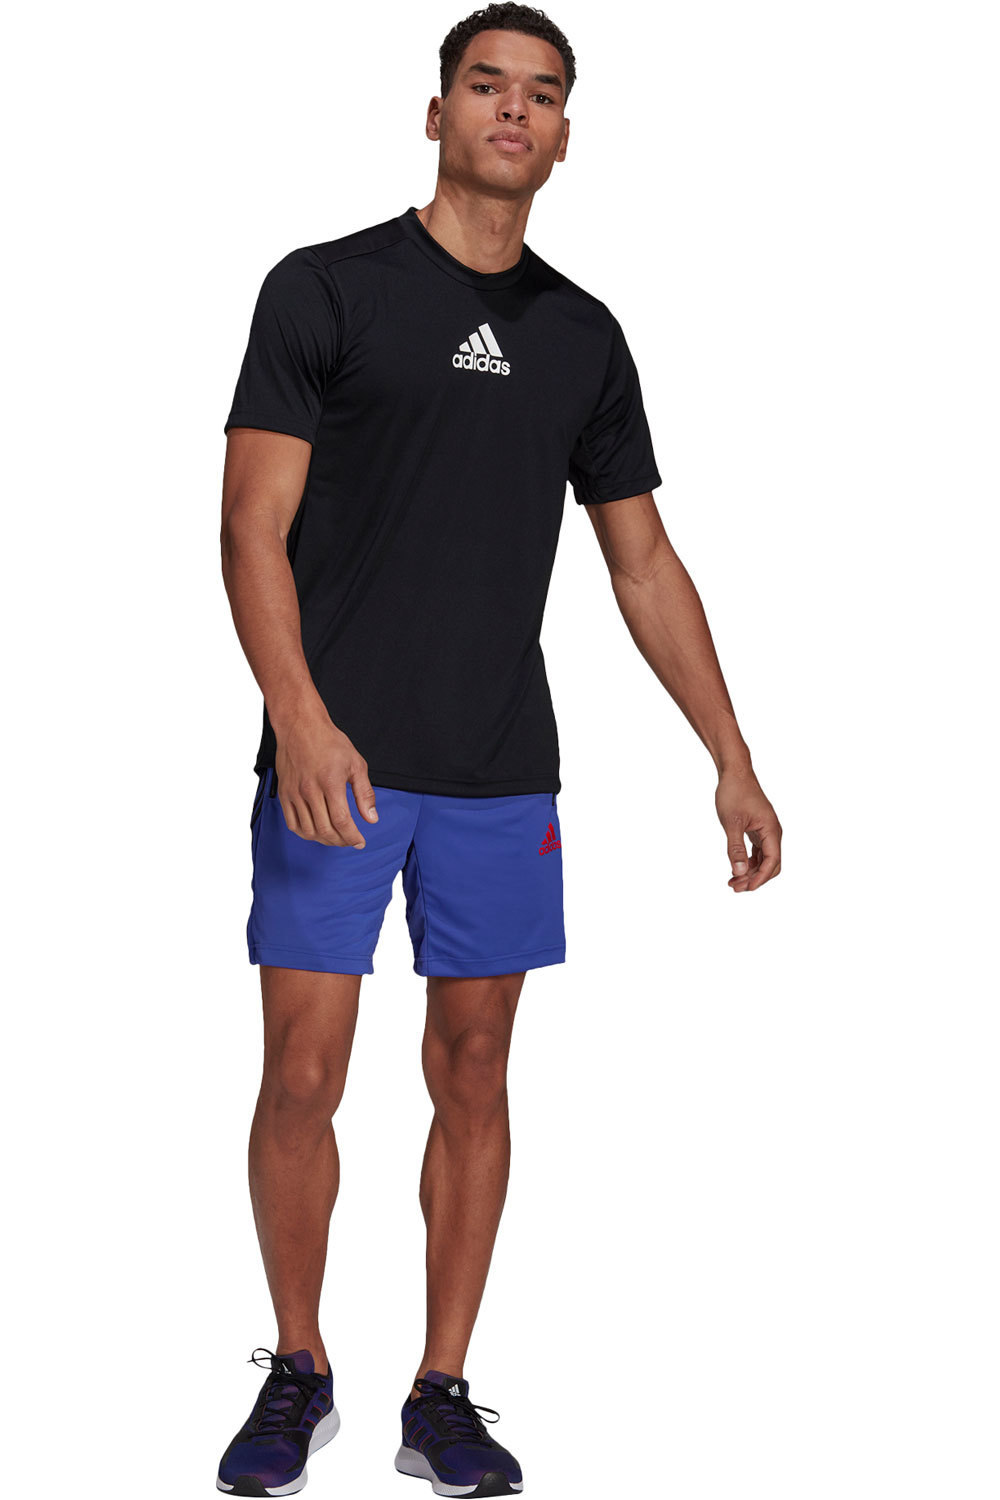 adidas camiseta fitness hombre Primeblue Designed To Move Sport 3 bandas 04